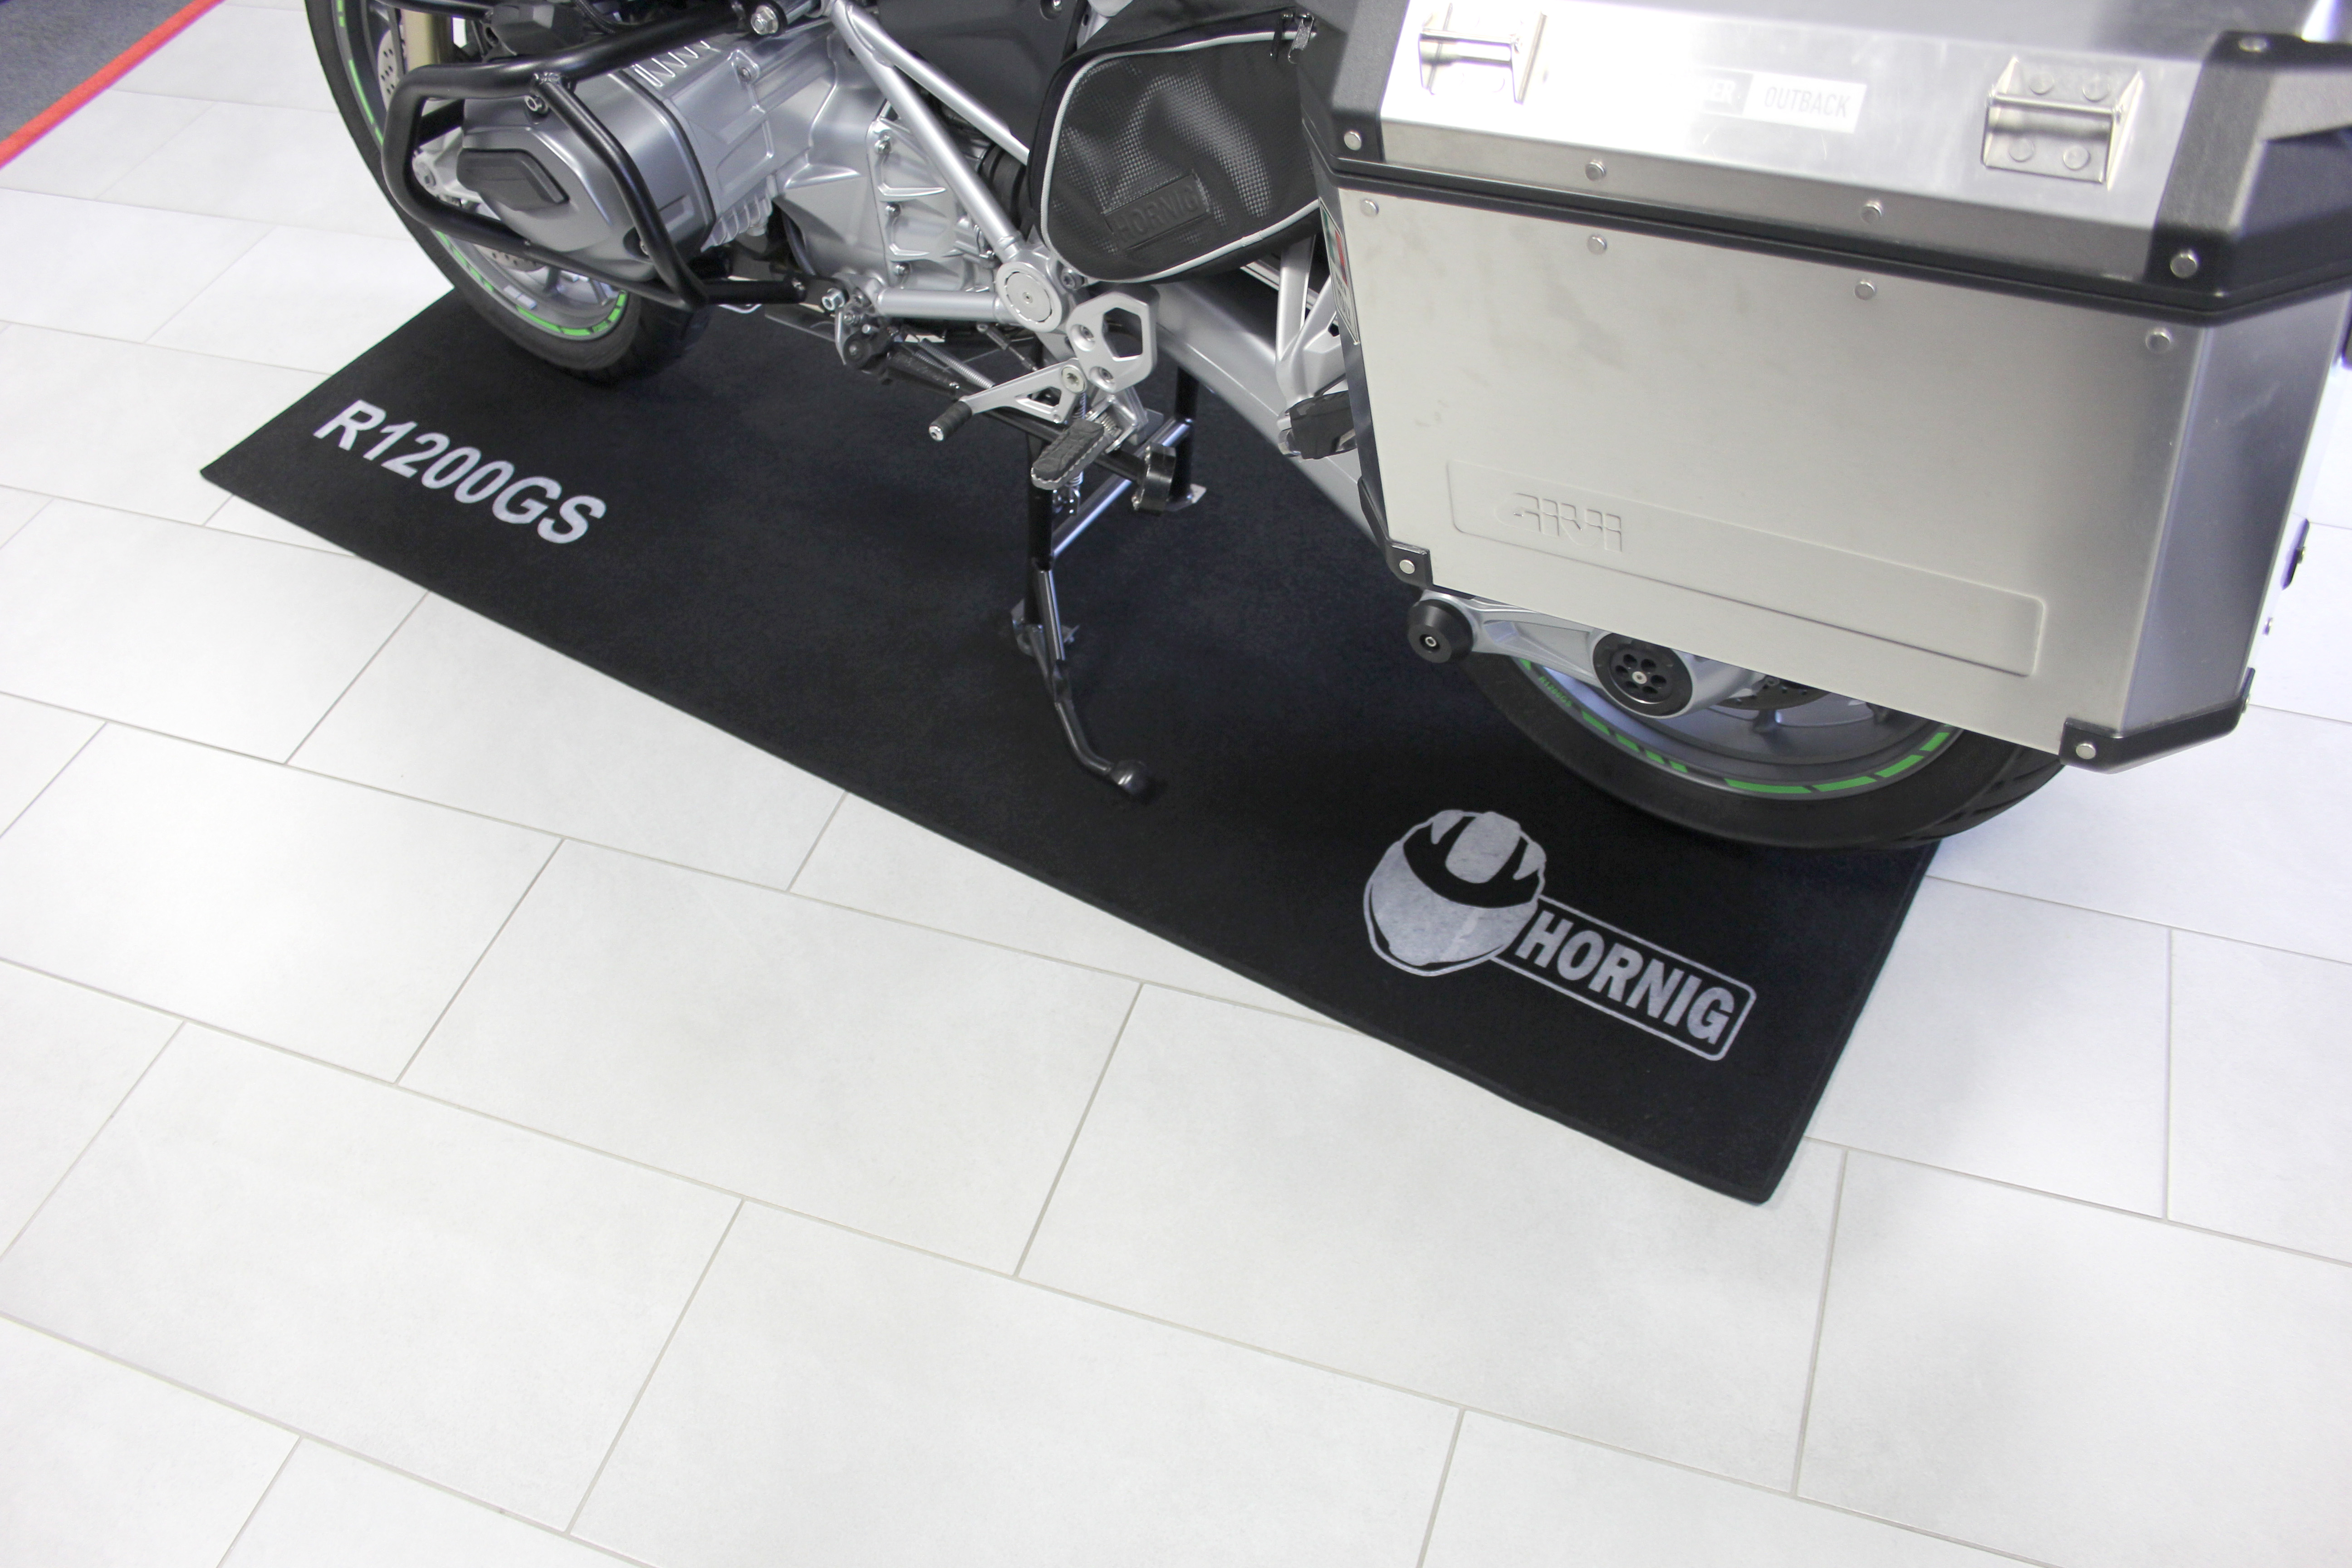 Teppiche für BMW Motorräder sehr praktisch und sieht gut aus